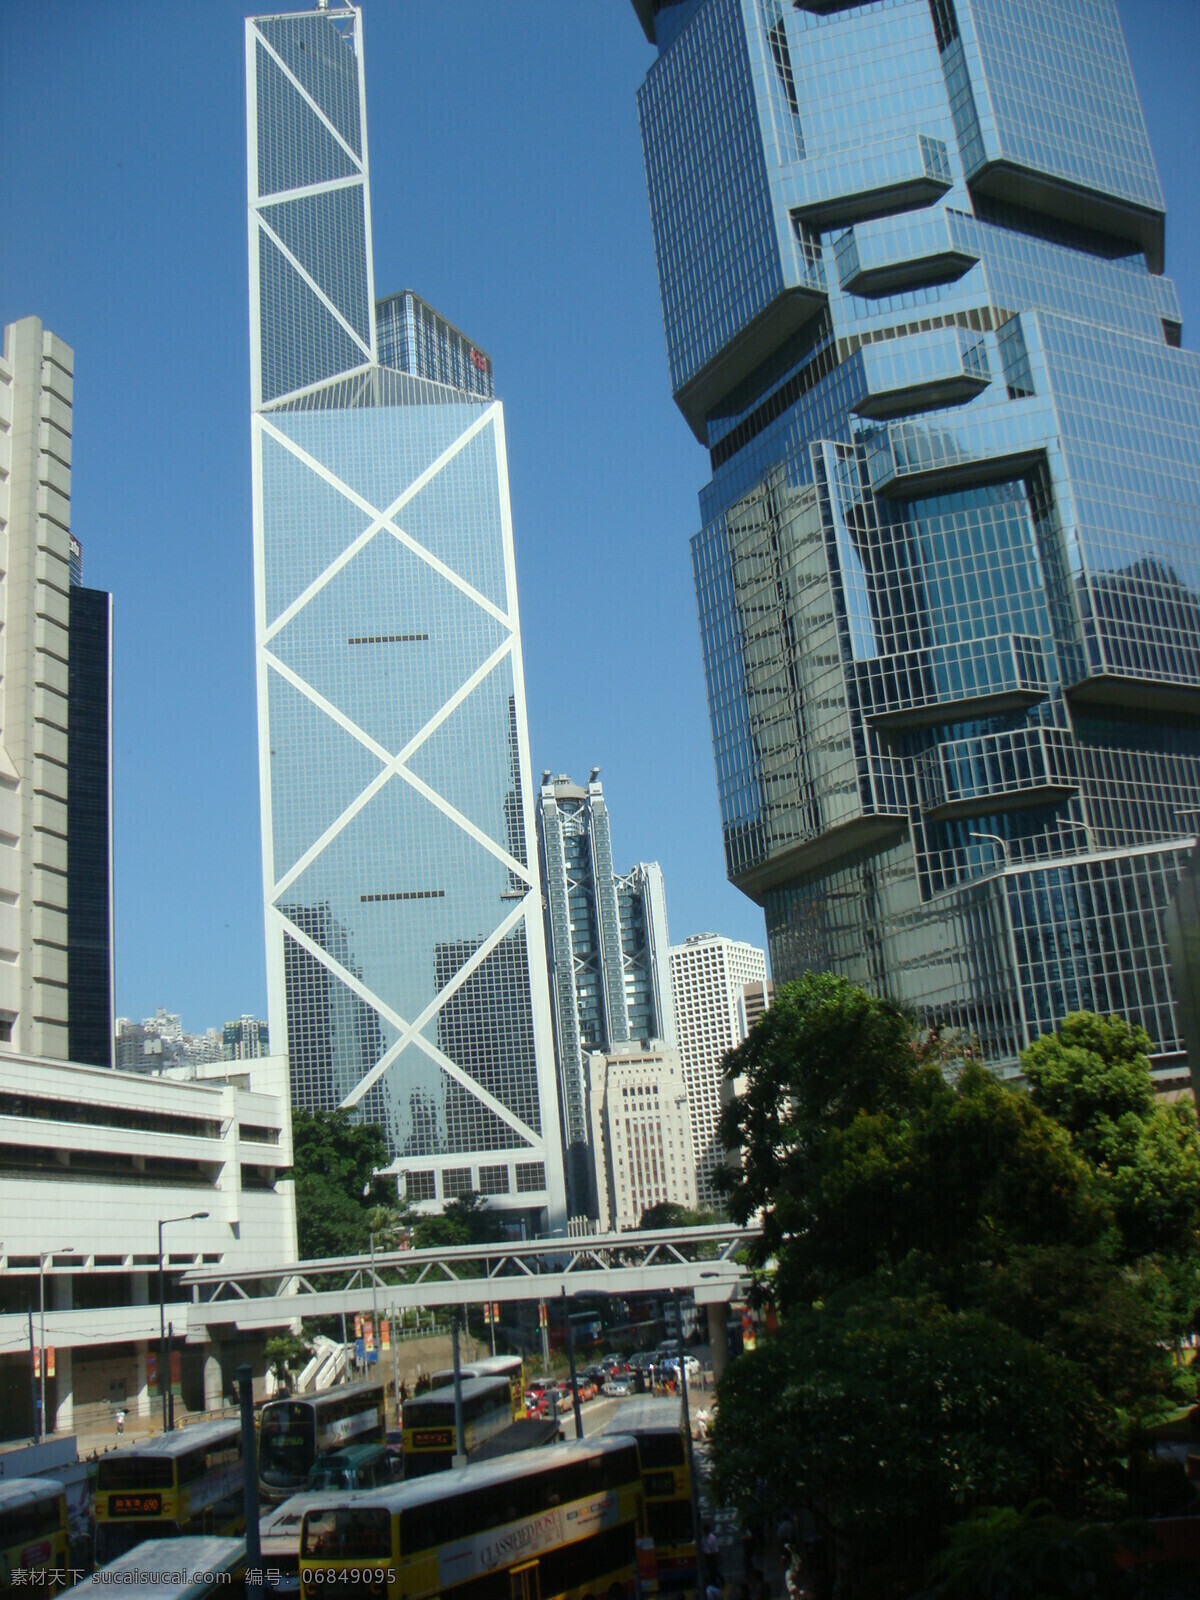 中国银行 大楼图片 高楼大厦 高楼建筑 繁华闹市 风景 生活 旅游餐饮